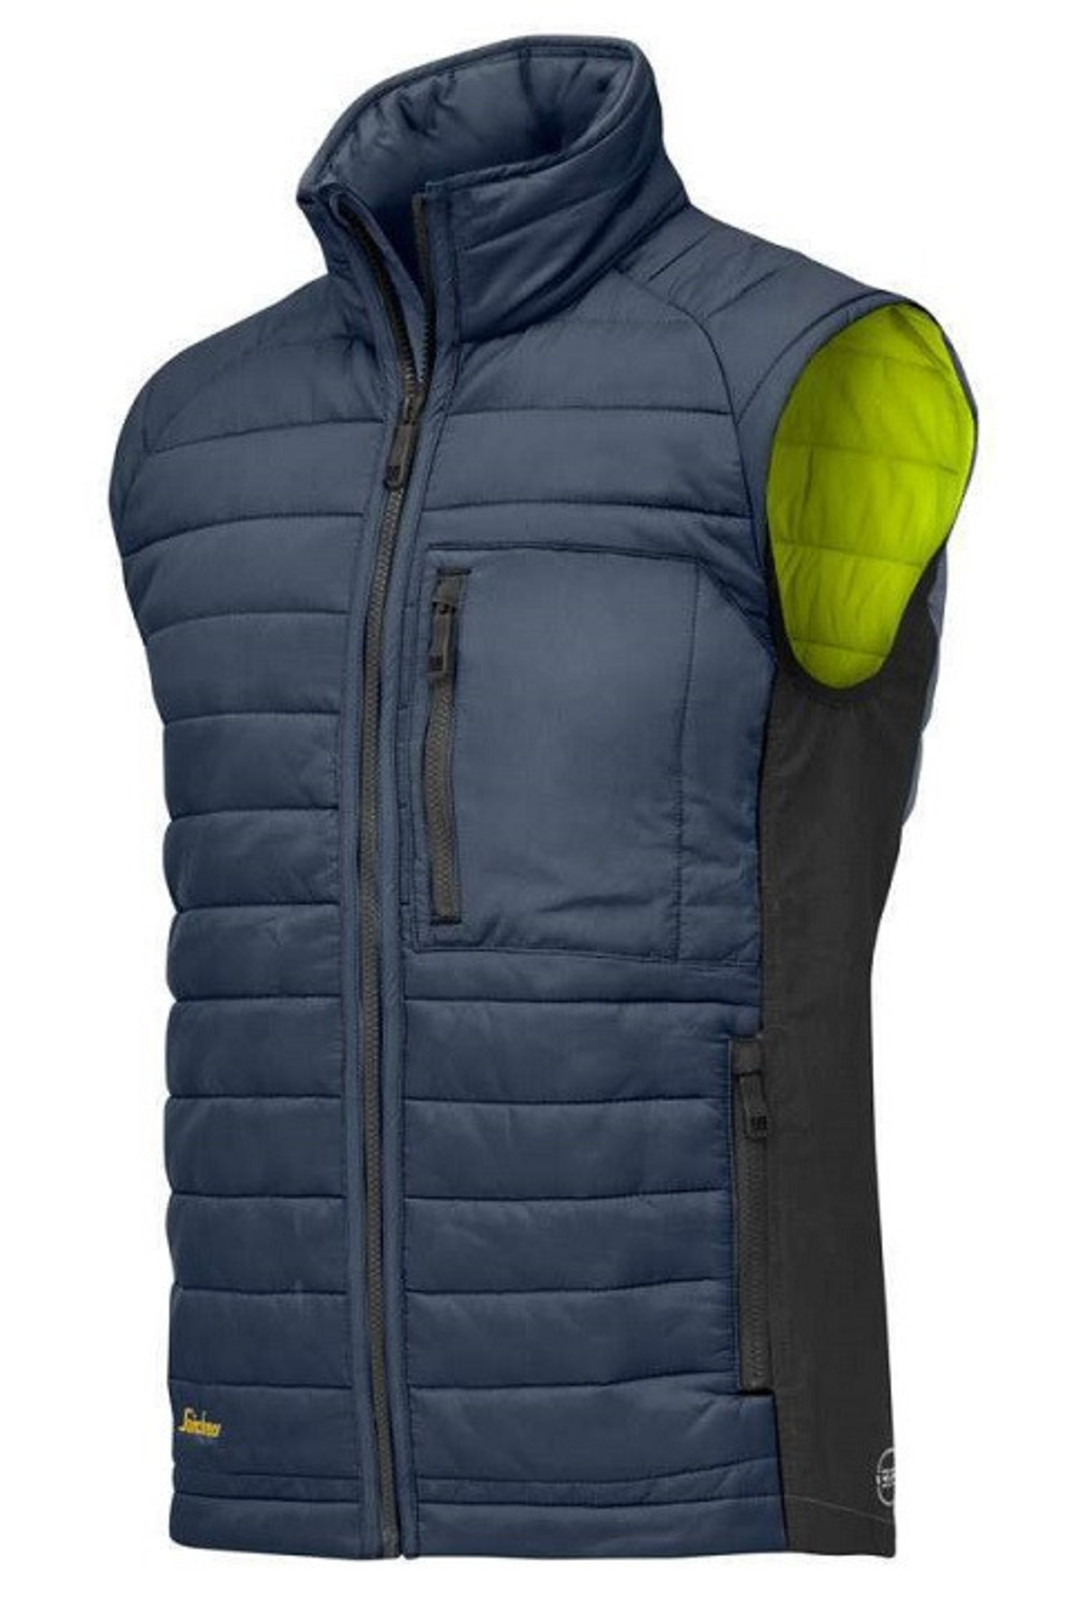 Prešívaná vesta Snickers® AllroundWork 37.5® - veľkosť: S, farba: modrá